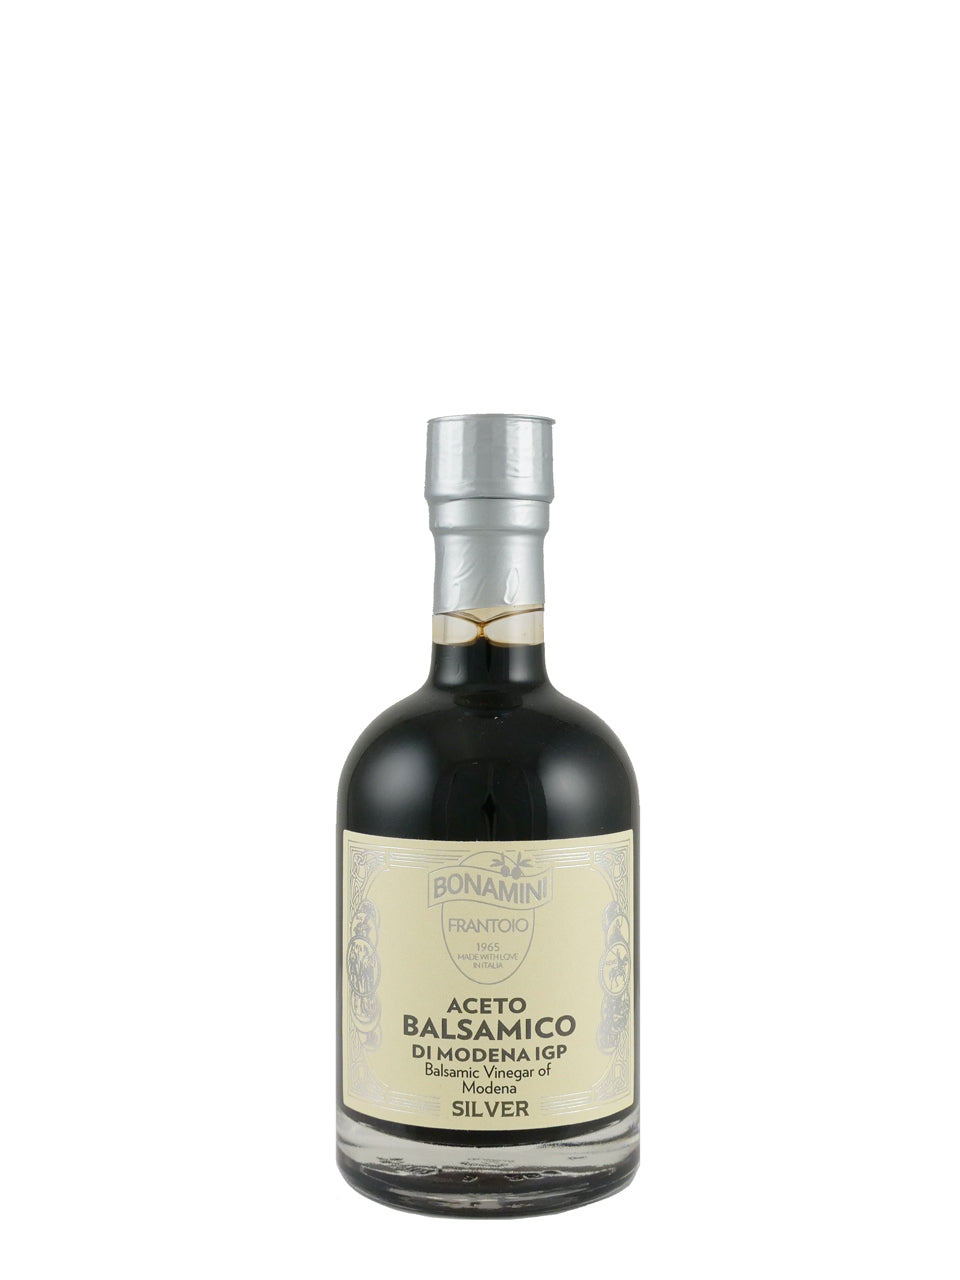 Bonamini Silver Label PGI Balsamic Vinegar of Modena